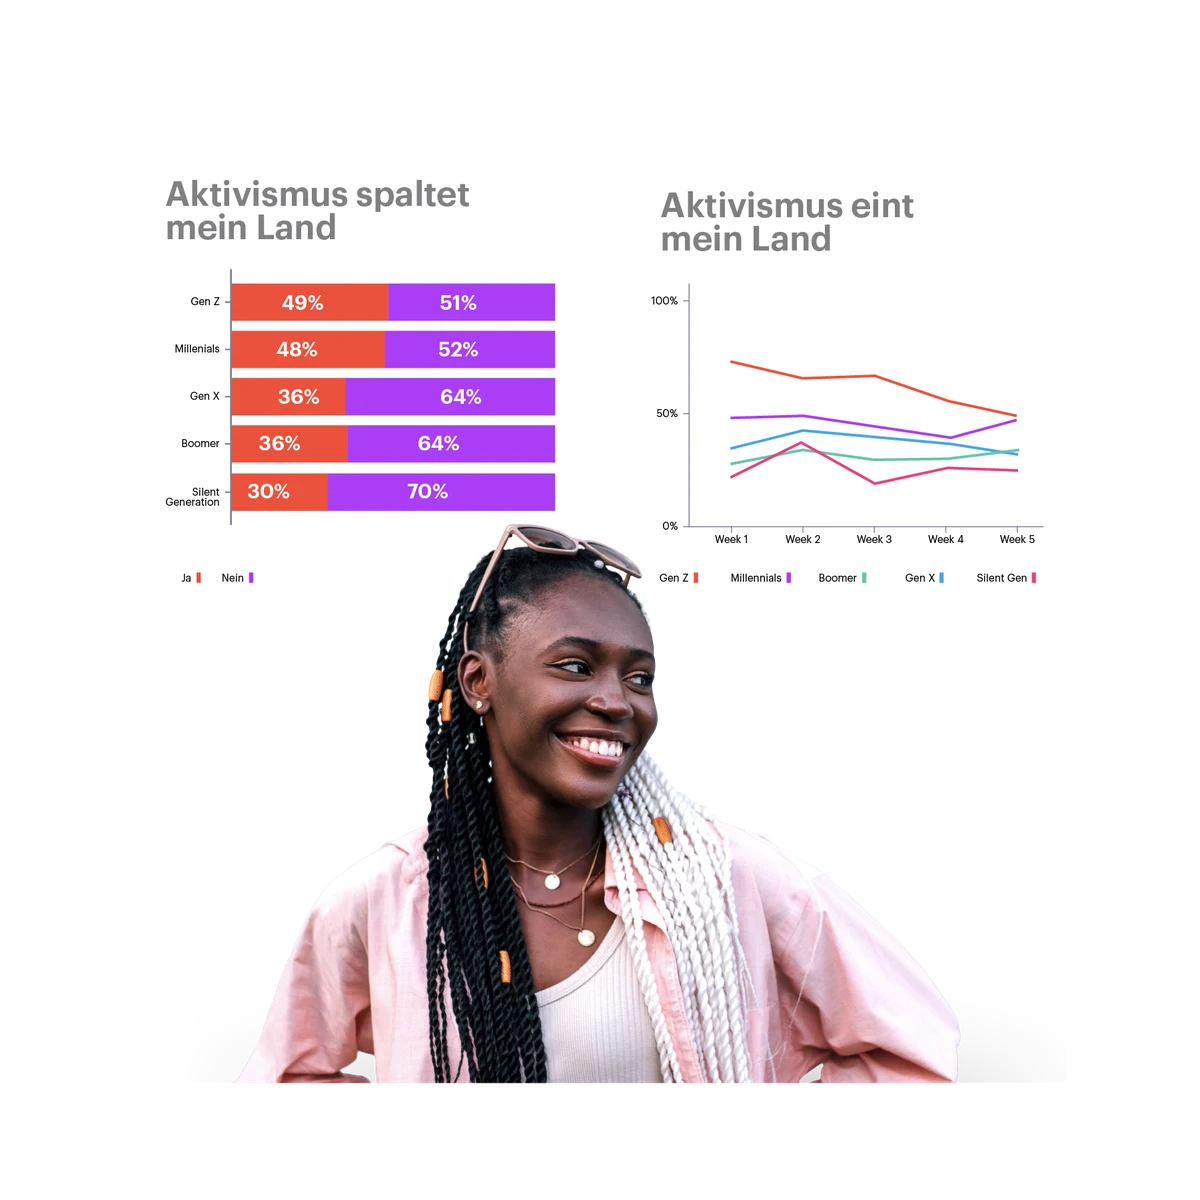 Frau mit Aktivismus-Umfragedaten im Hintergrund